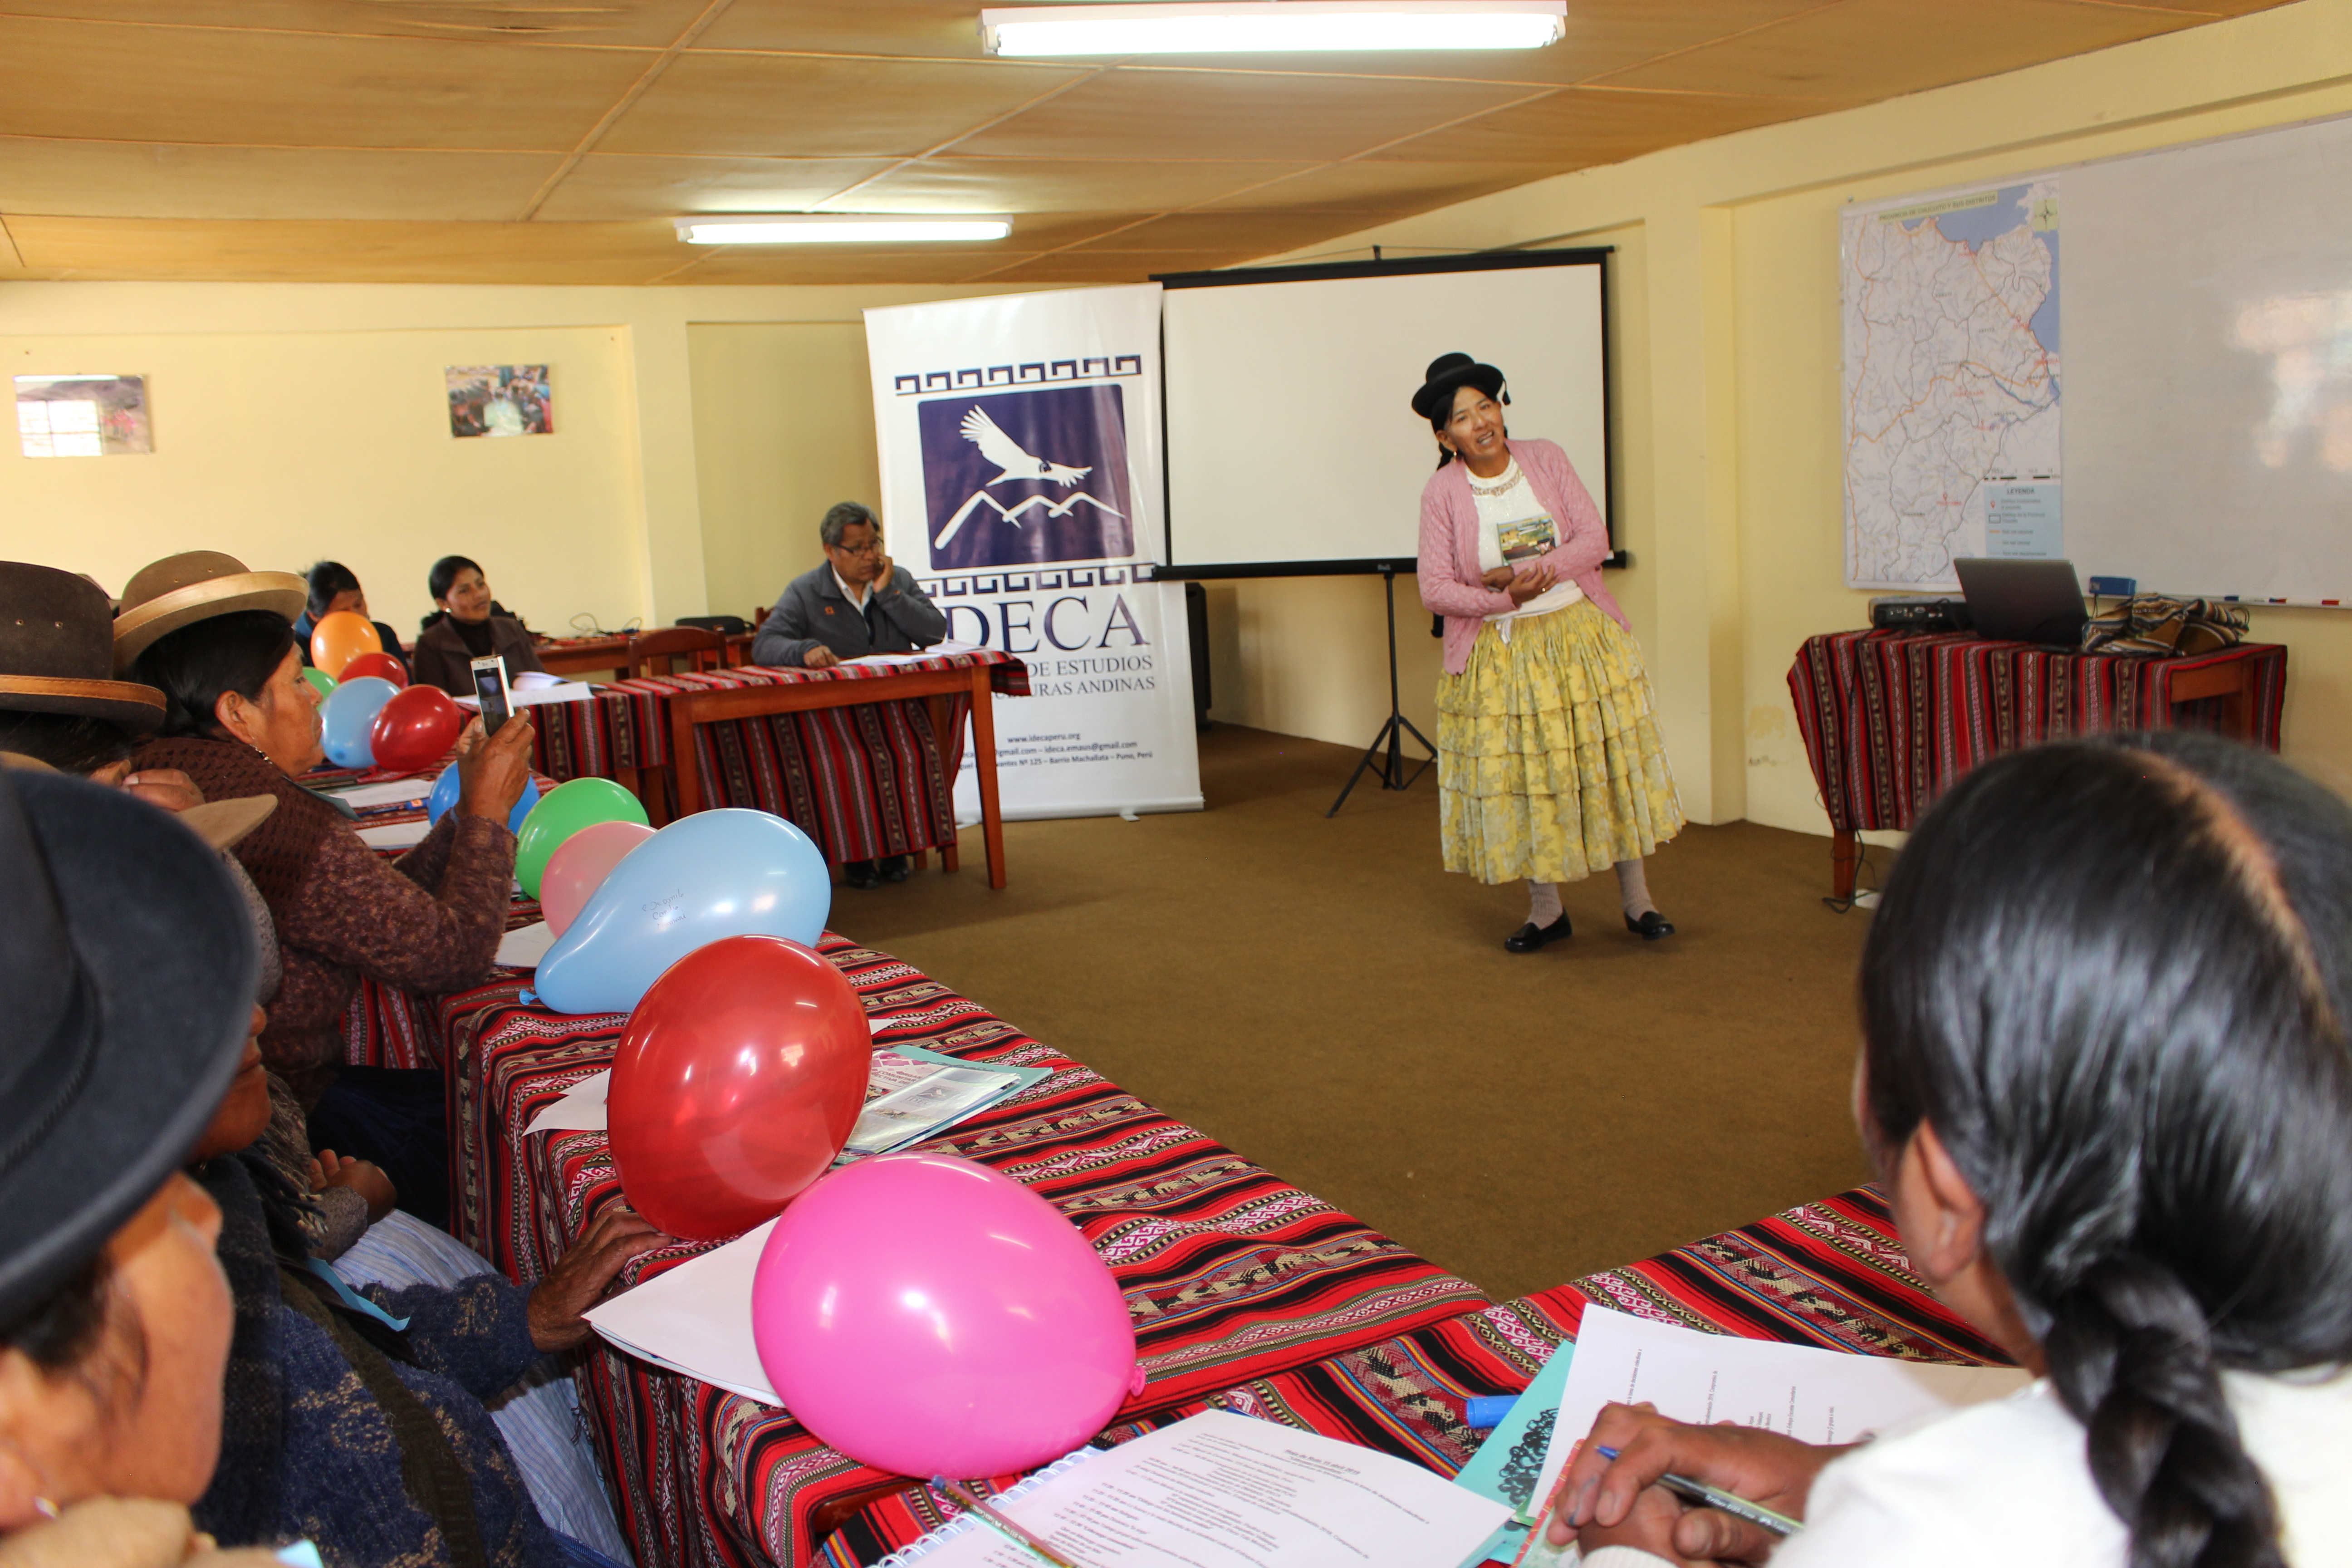 La escuela comunitaria “Kullakanakana sartawipa” inició actividades del 2019 visibilizando experiencias de liderazgos comunitarios